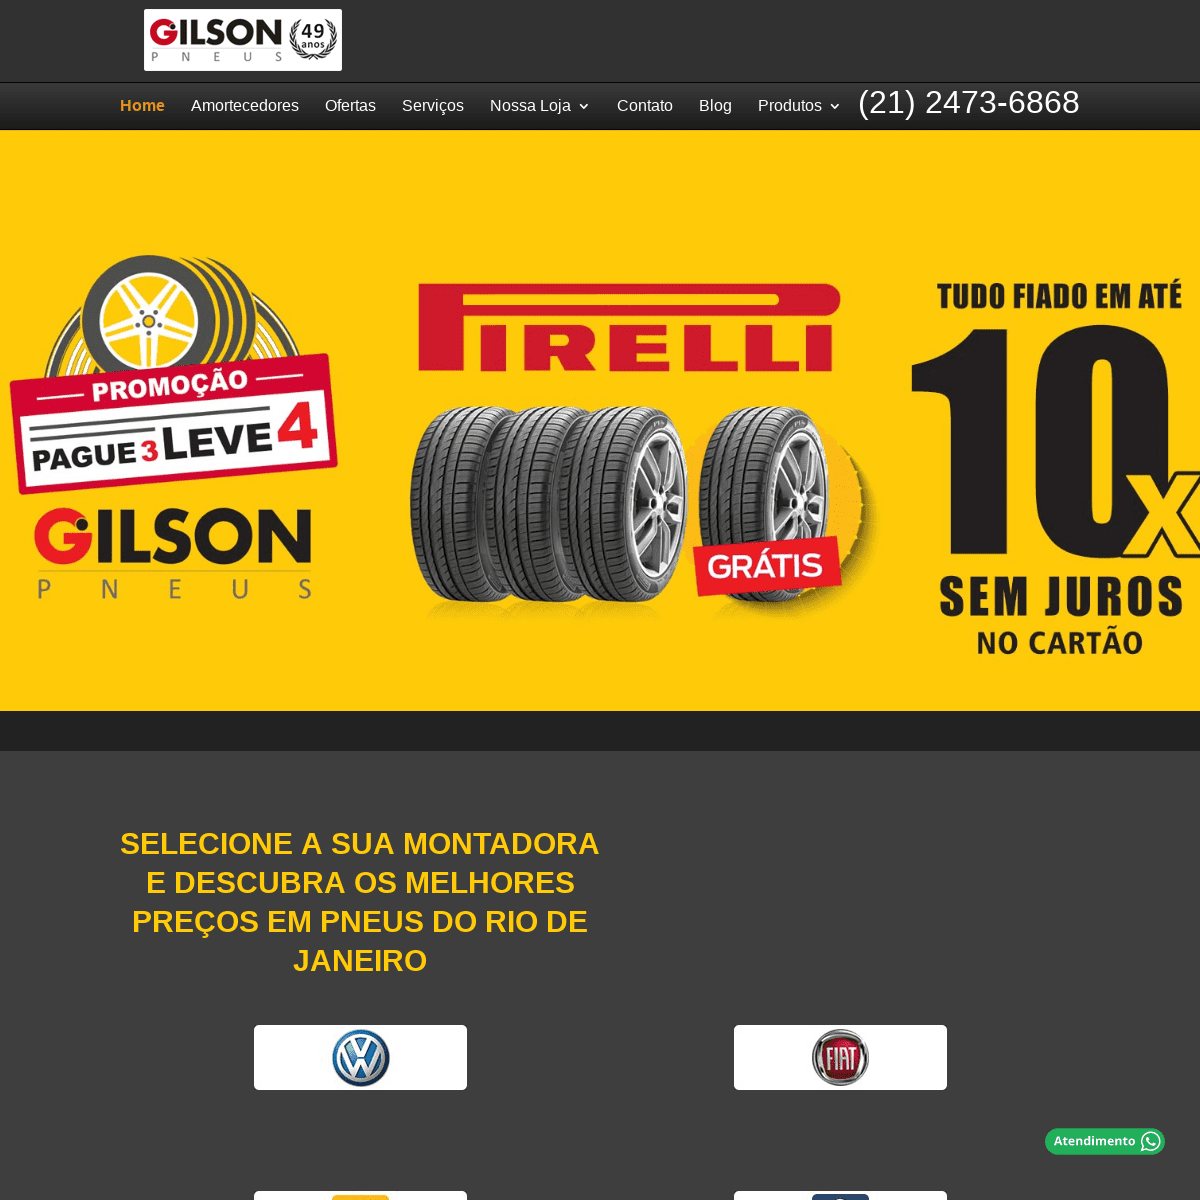 Gilson Pneus - Os Pneus mais baratos do RJ (R$ 85) e Rodas Esportivas -